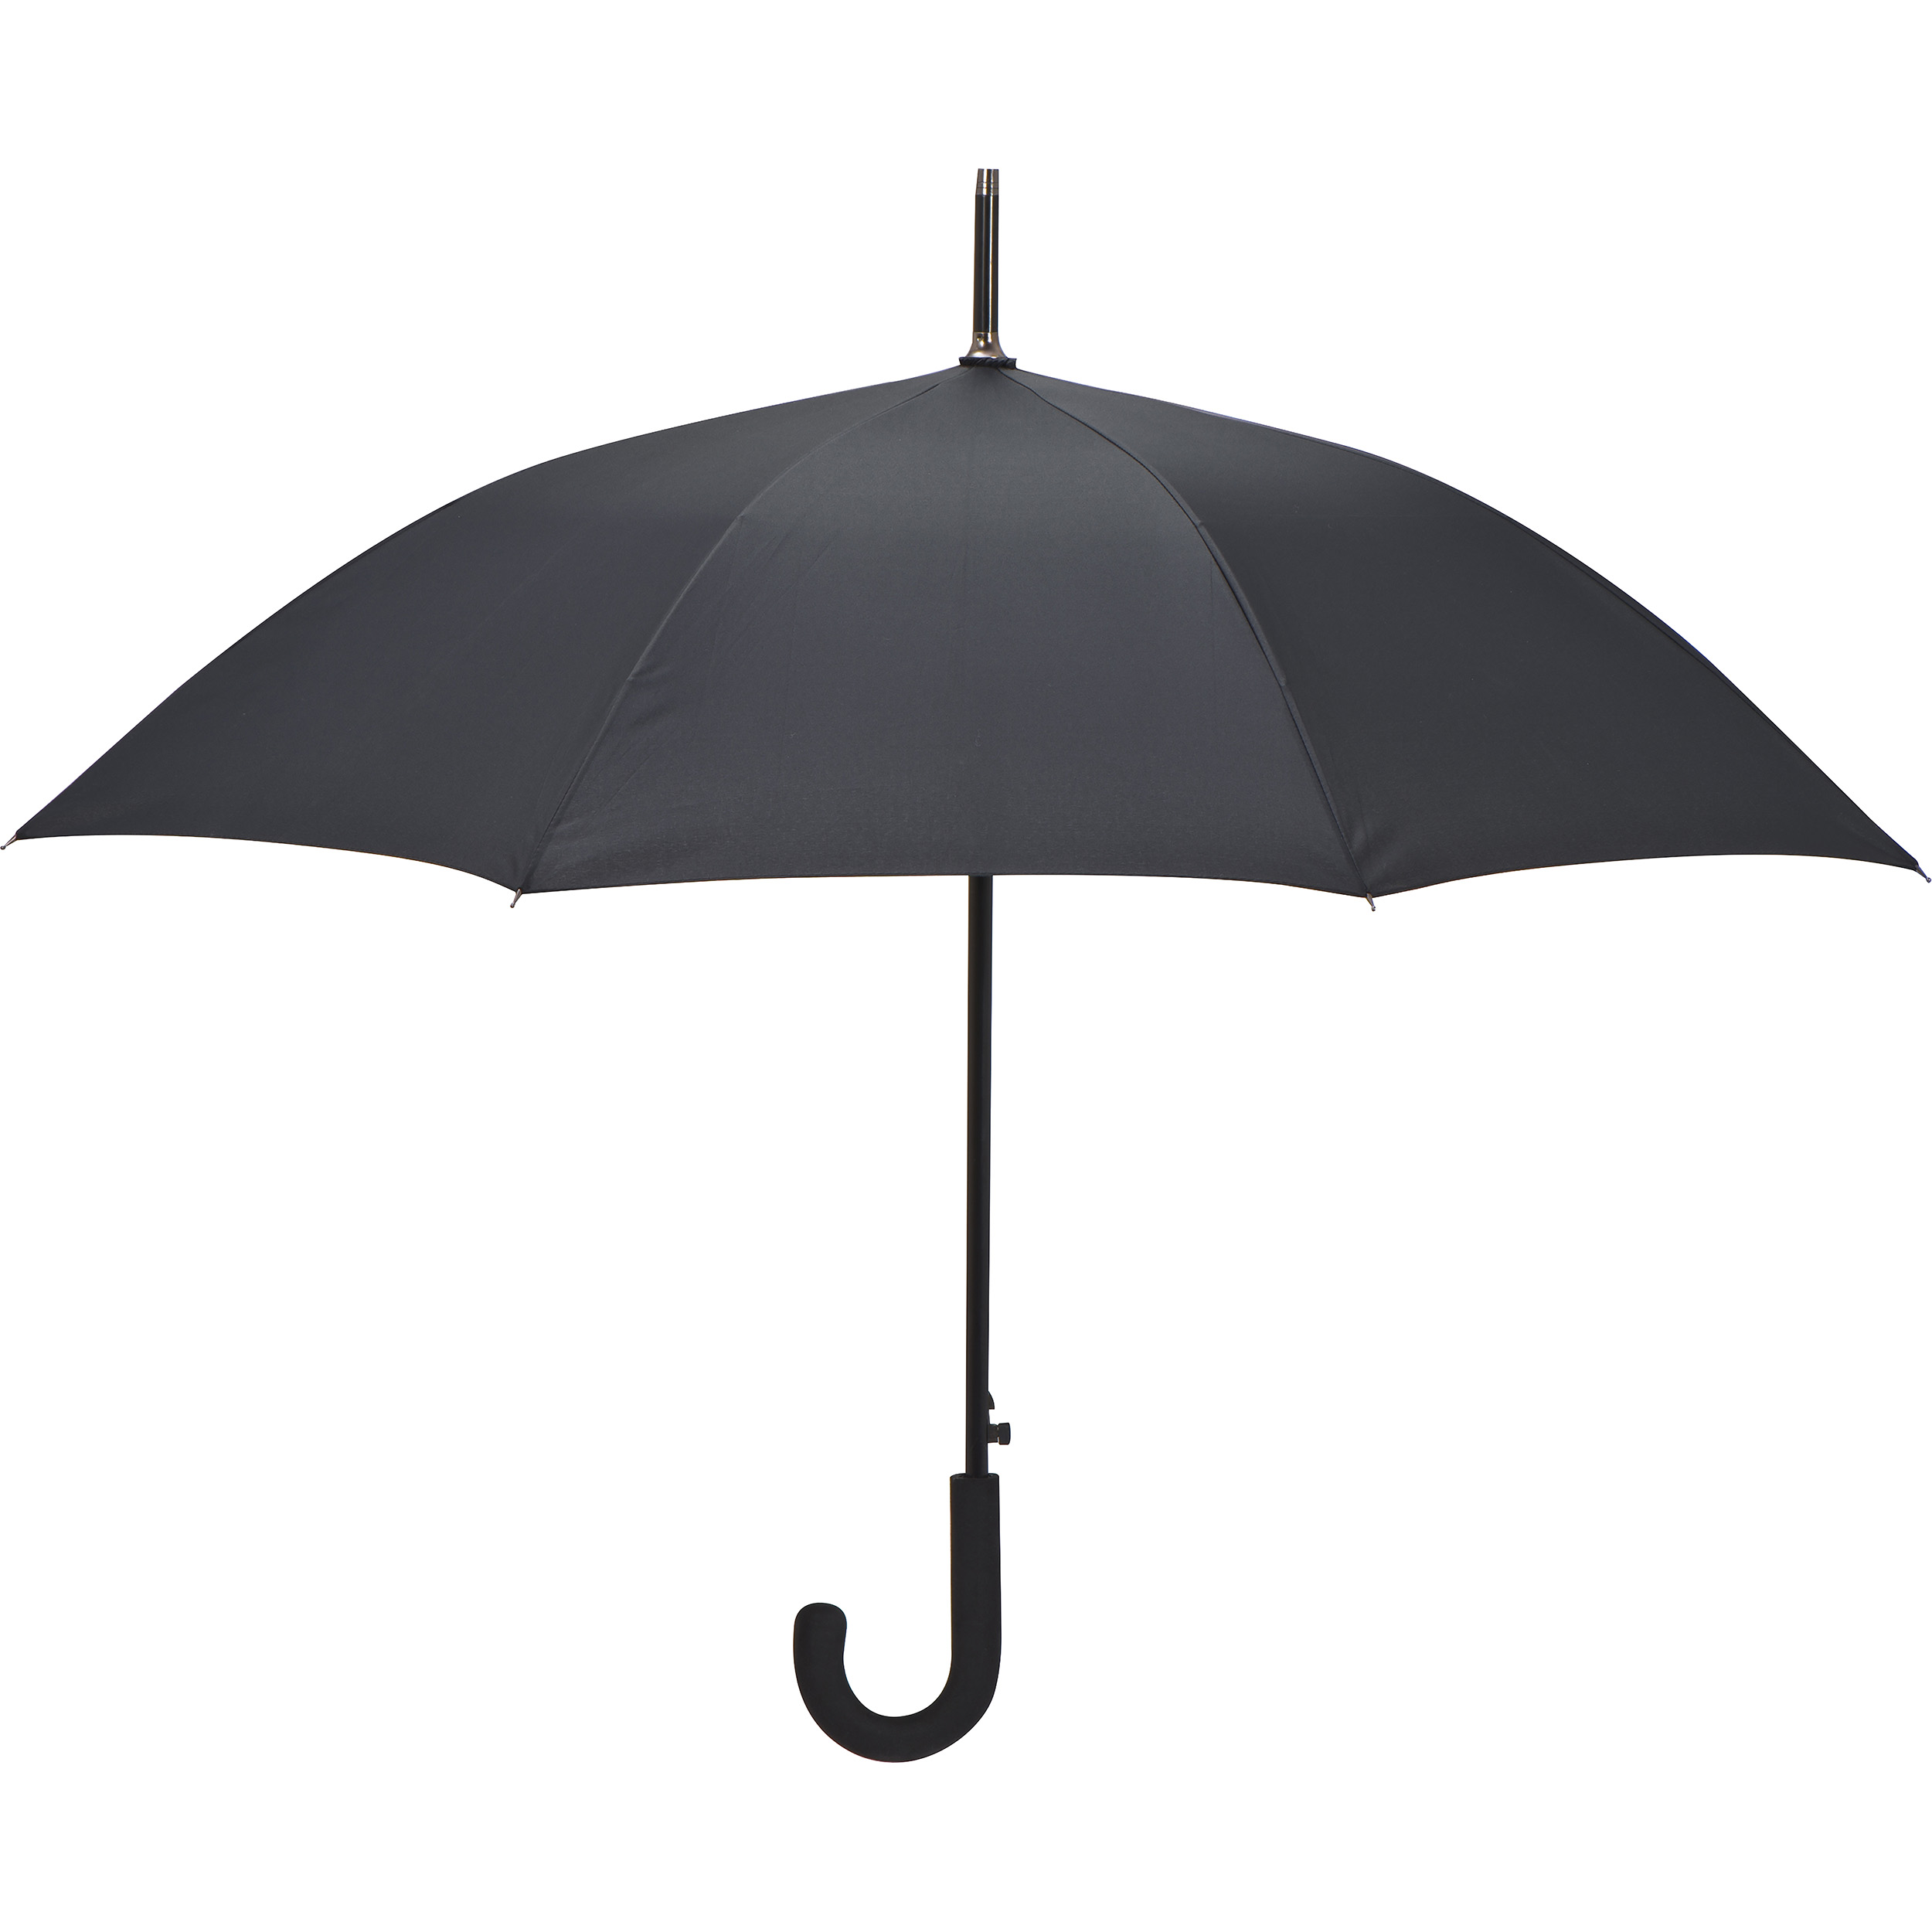 Paraplu met aluminium handvat